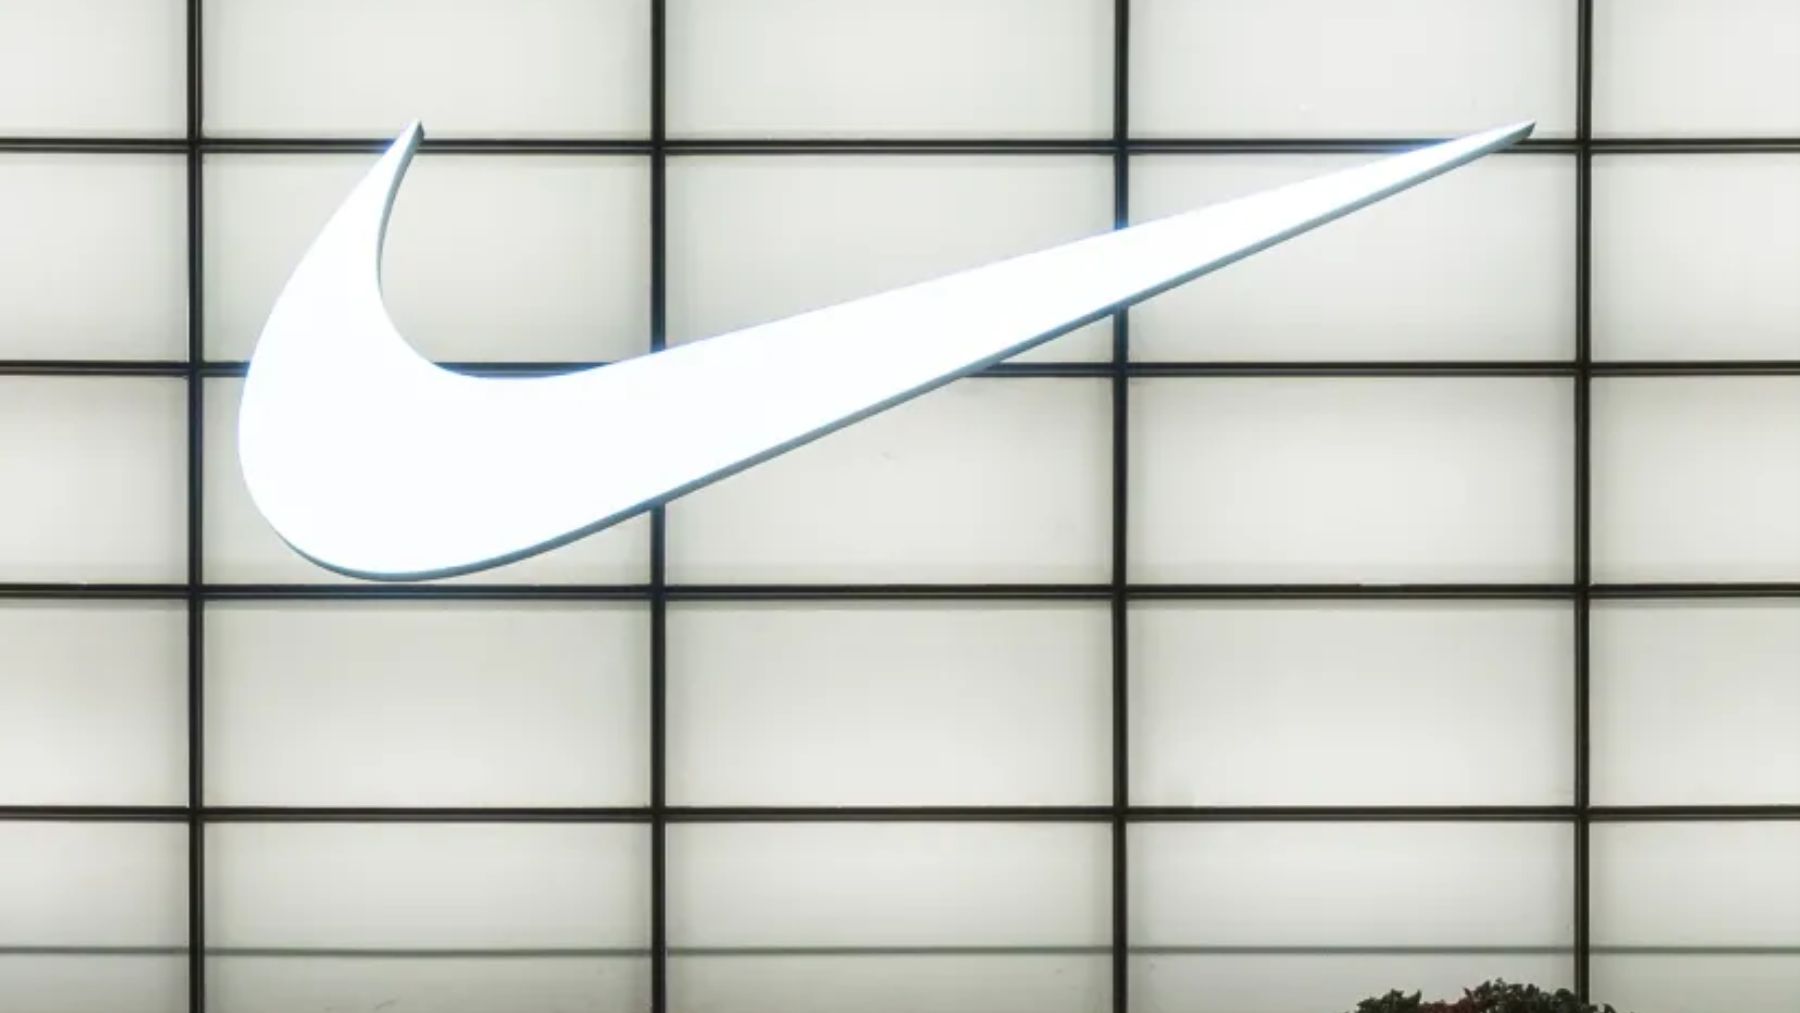 Estas zapatillas Nike fosforitas de rebajas el outlet: colas kilométricas por conseguirlas